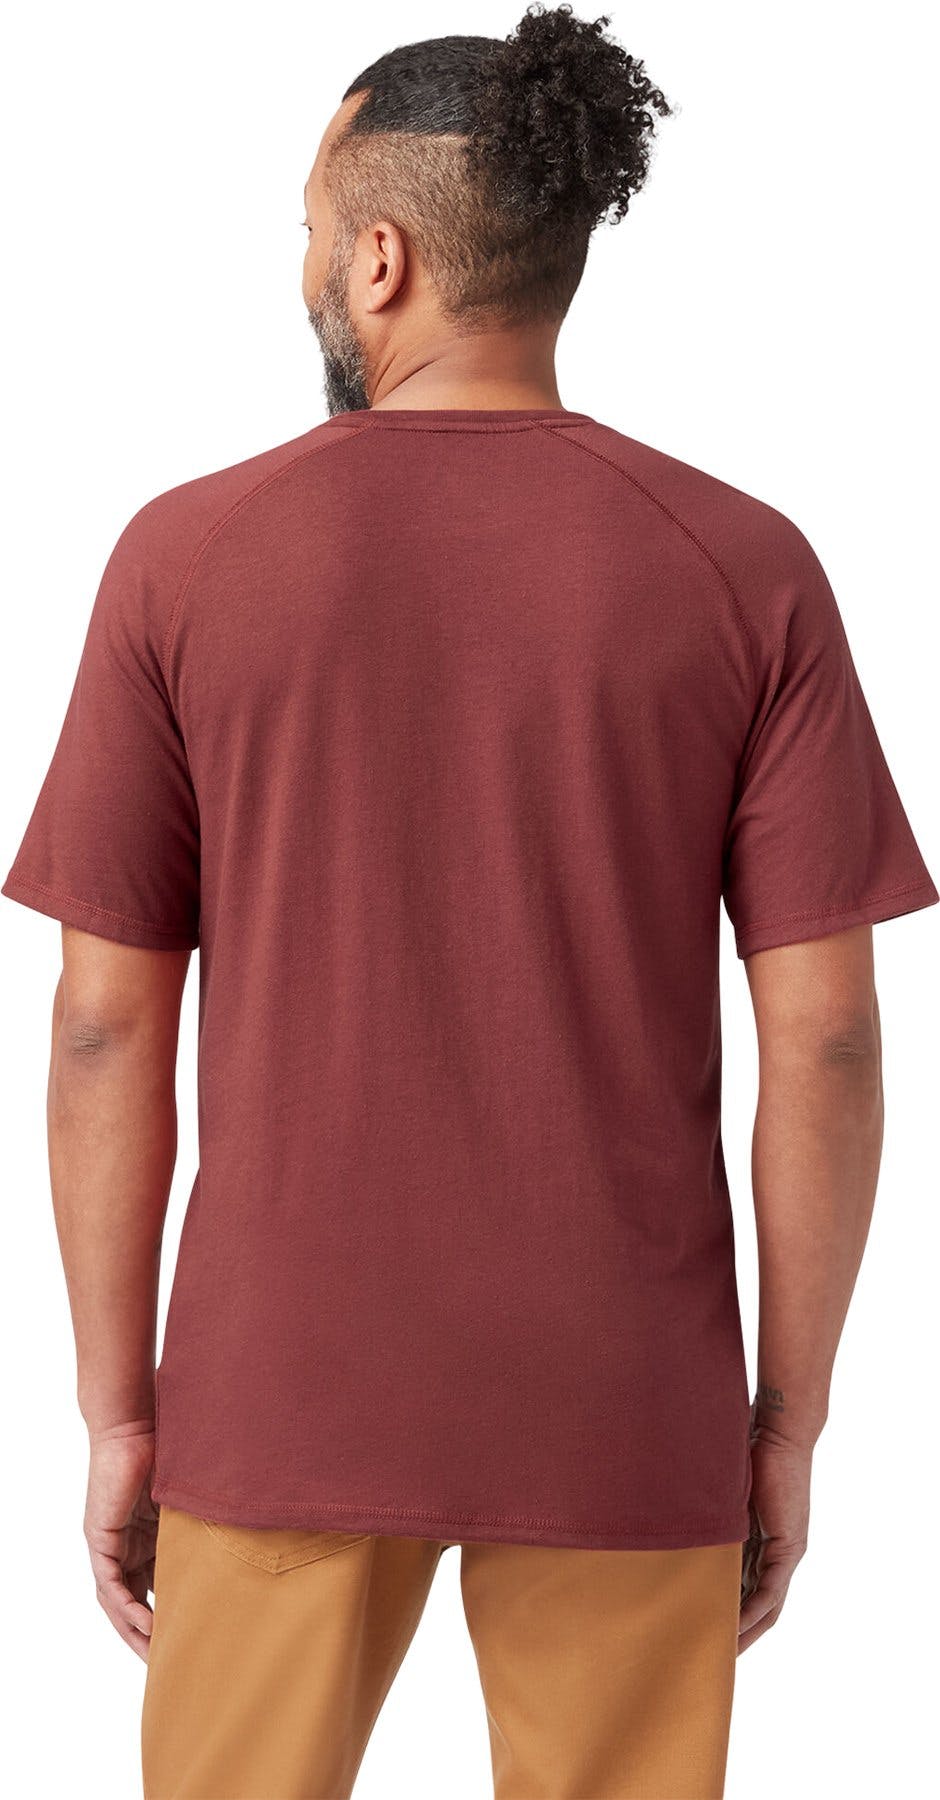 Numéro de l'image de la galerie de produits 3 pour le produit T-shirt avec poche à manches courtes Cooling - Homme